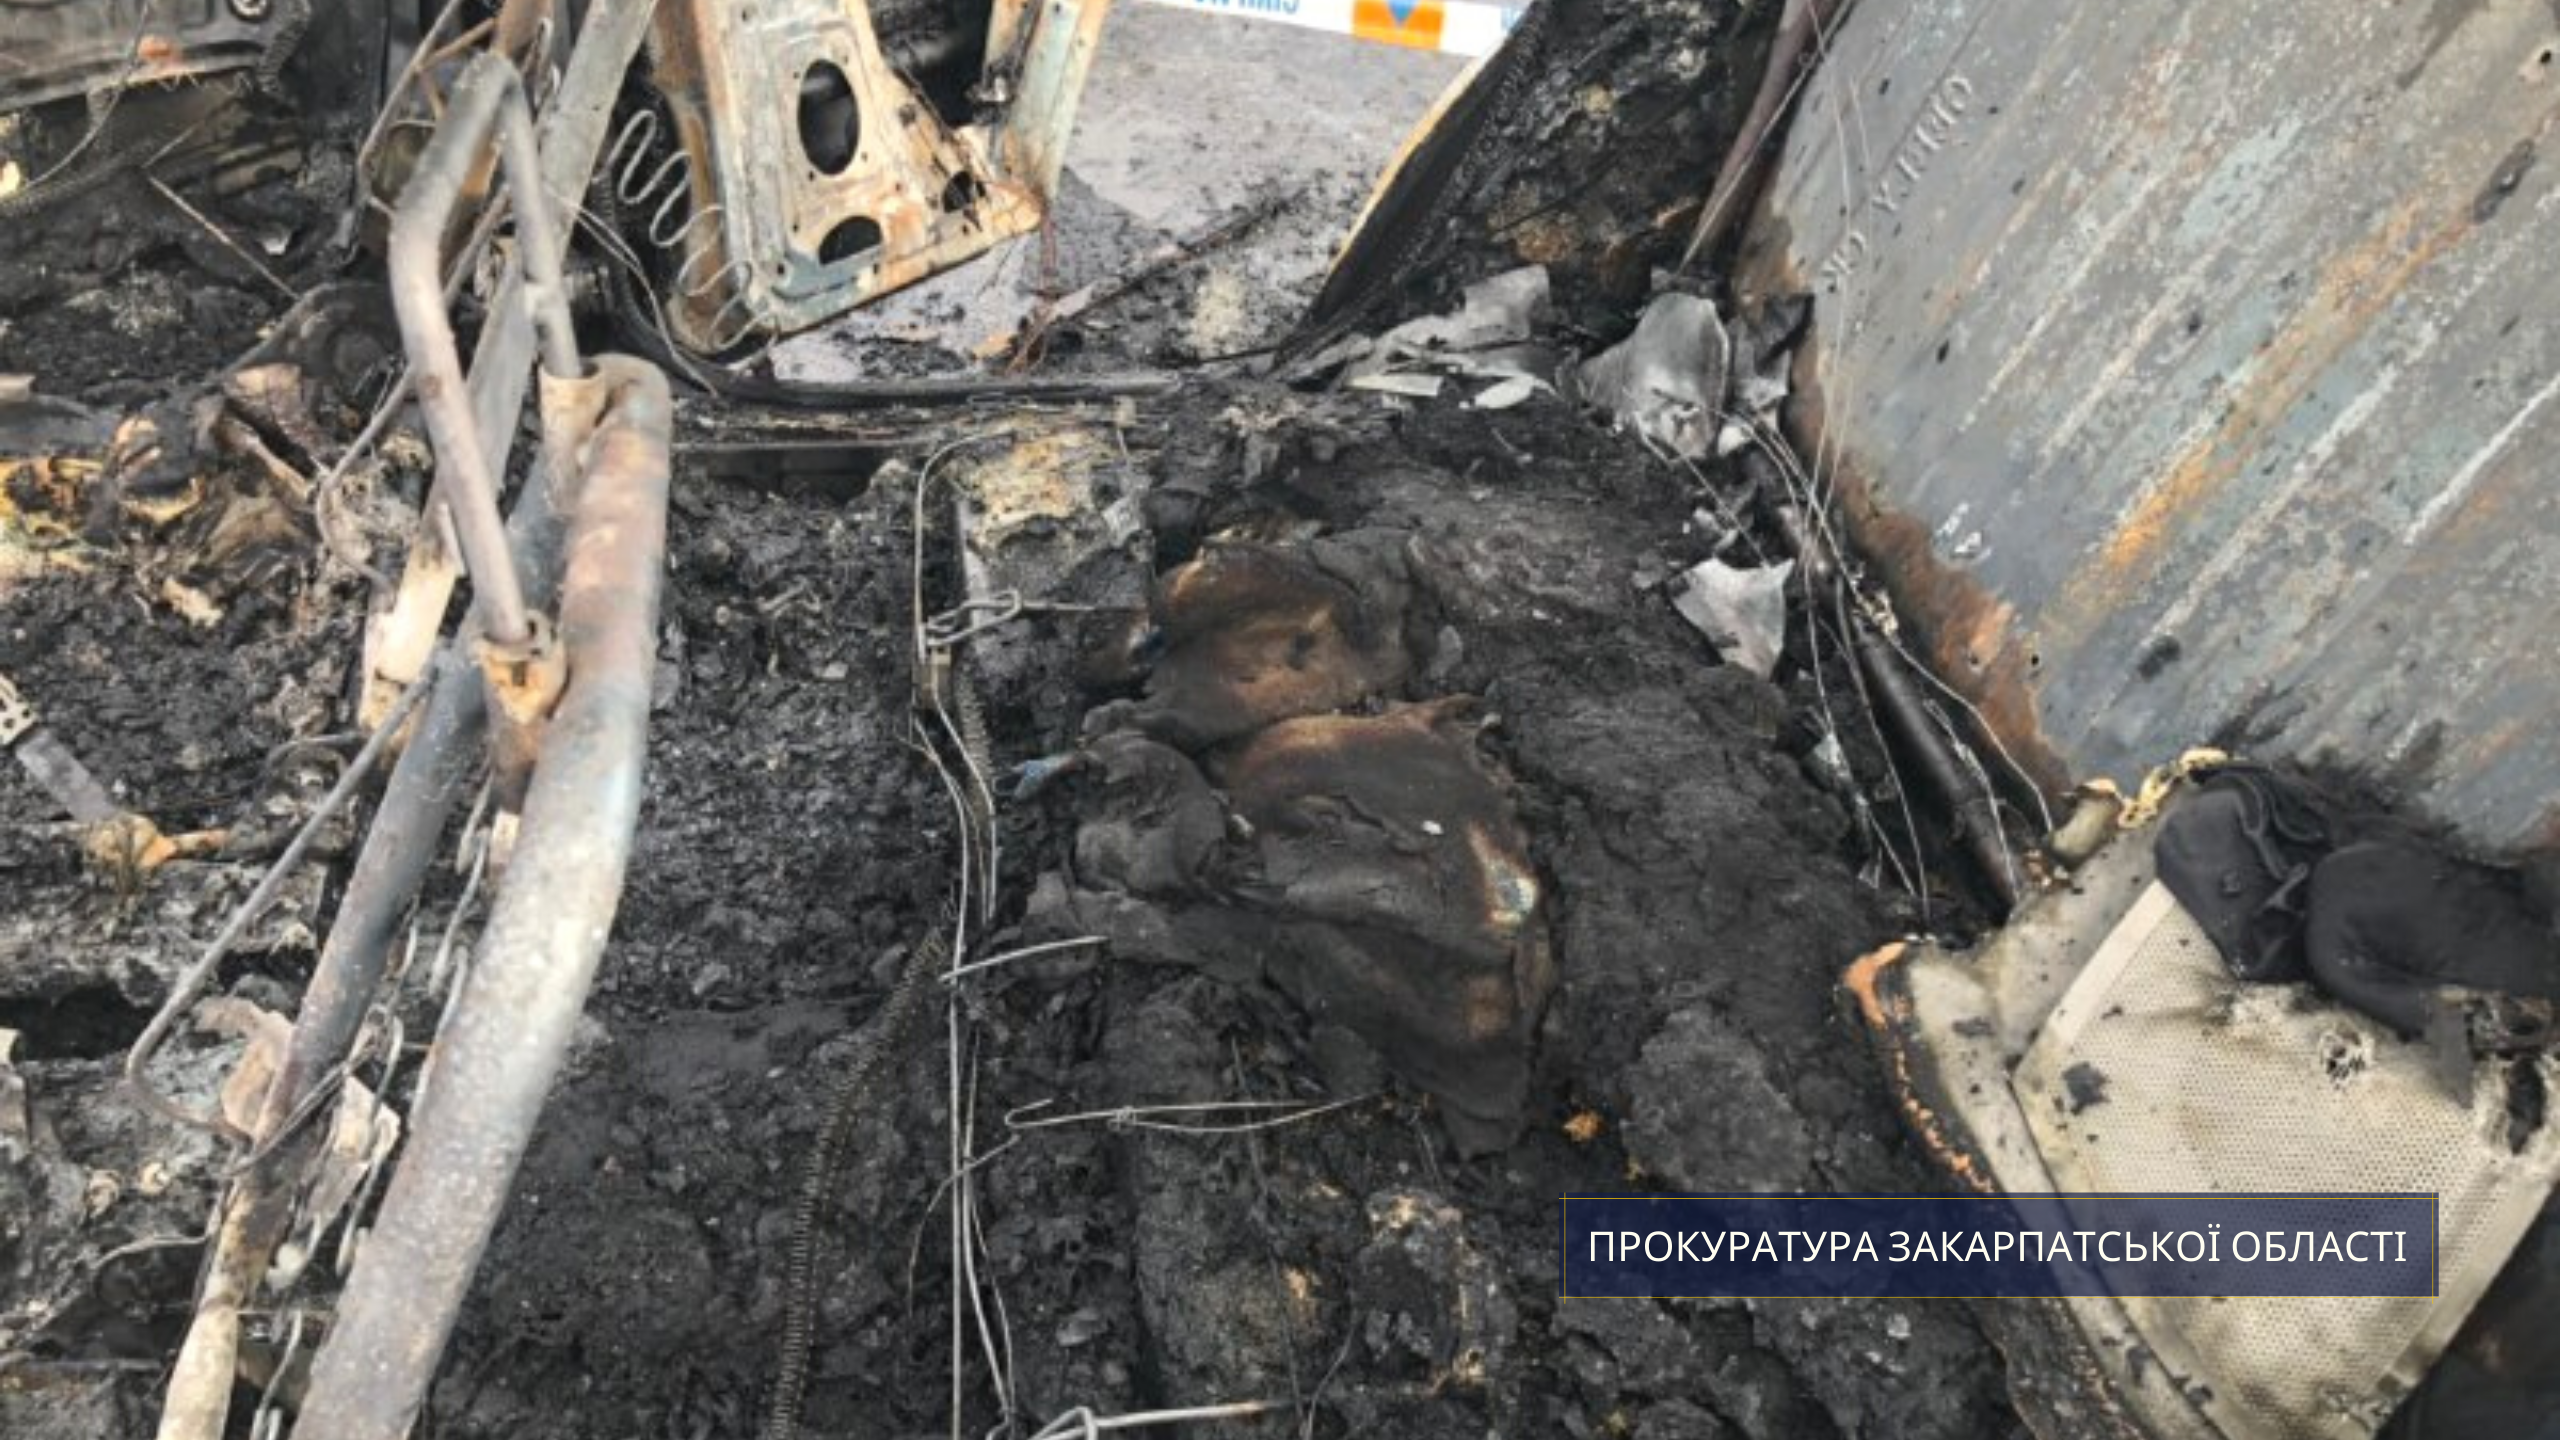 Столкновение двух иномарок в Закарпатье привело к большому пожару - двое пострадавших